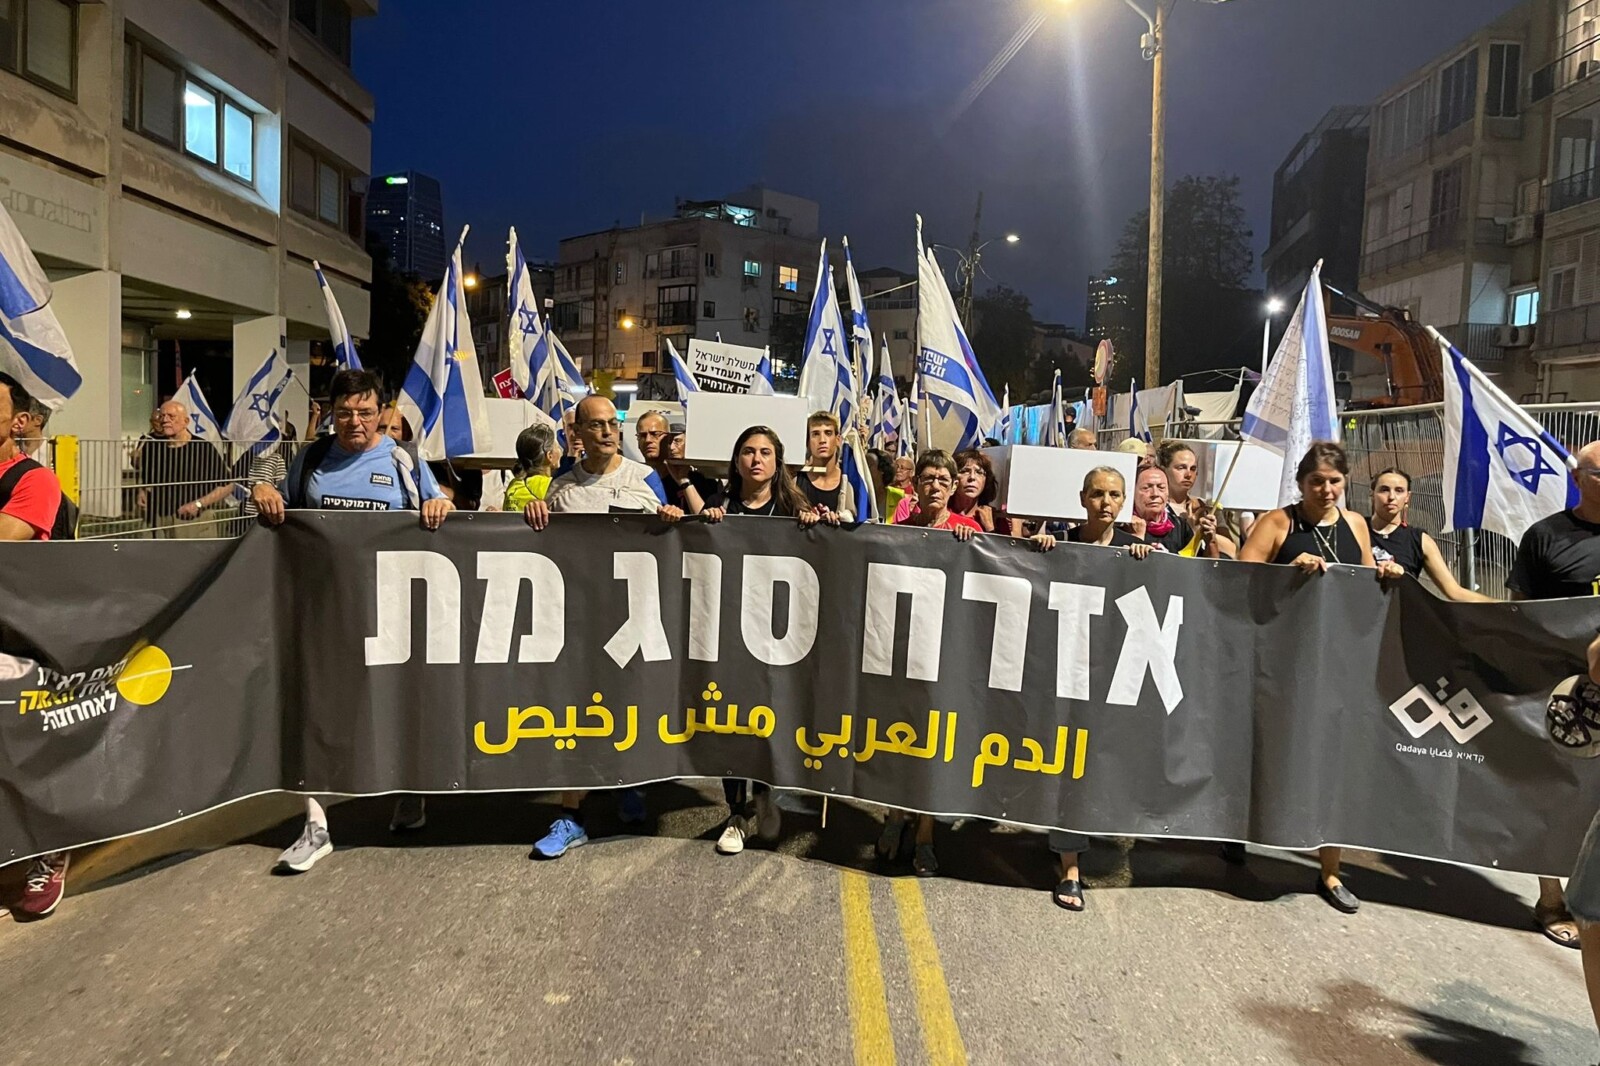 שלט מחאה על האלימות בחברה הערבית בהפגנת מחאה נגד הרפורמה במערכת המשפט בתל אביב (צילום: האם ראית את האופק לאחרונה)